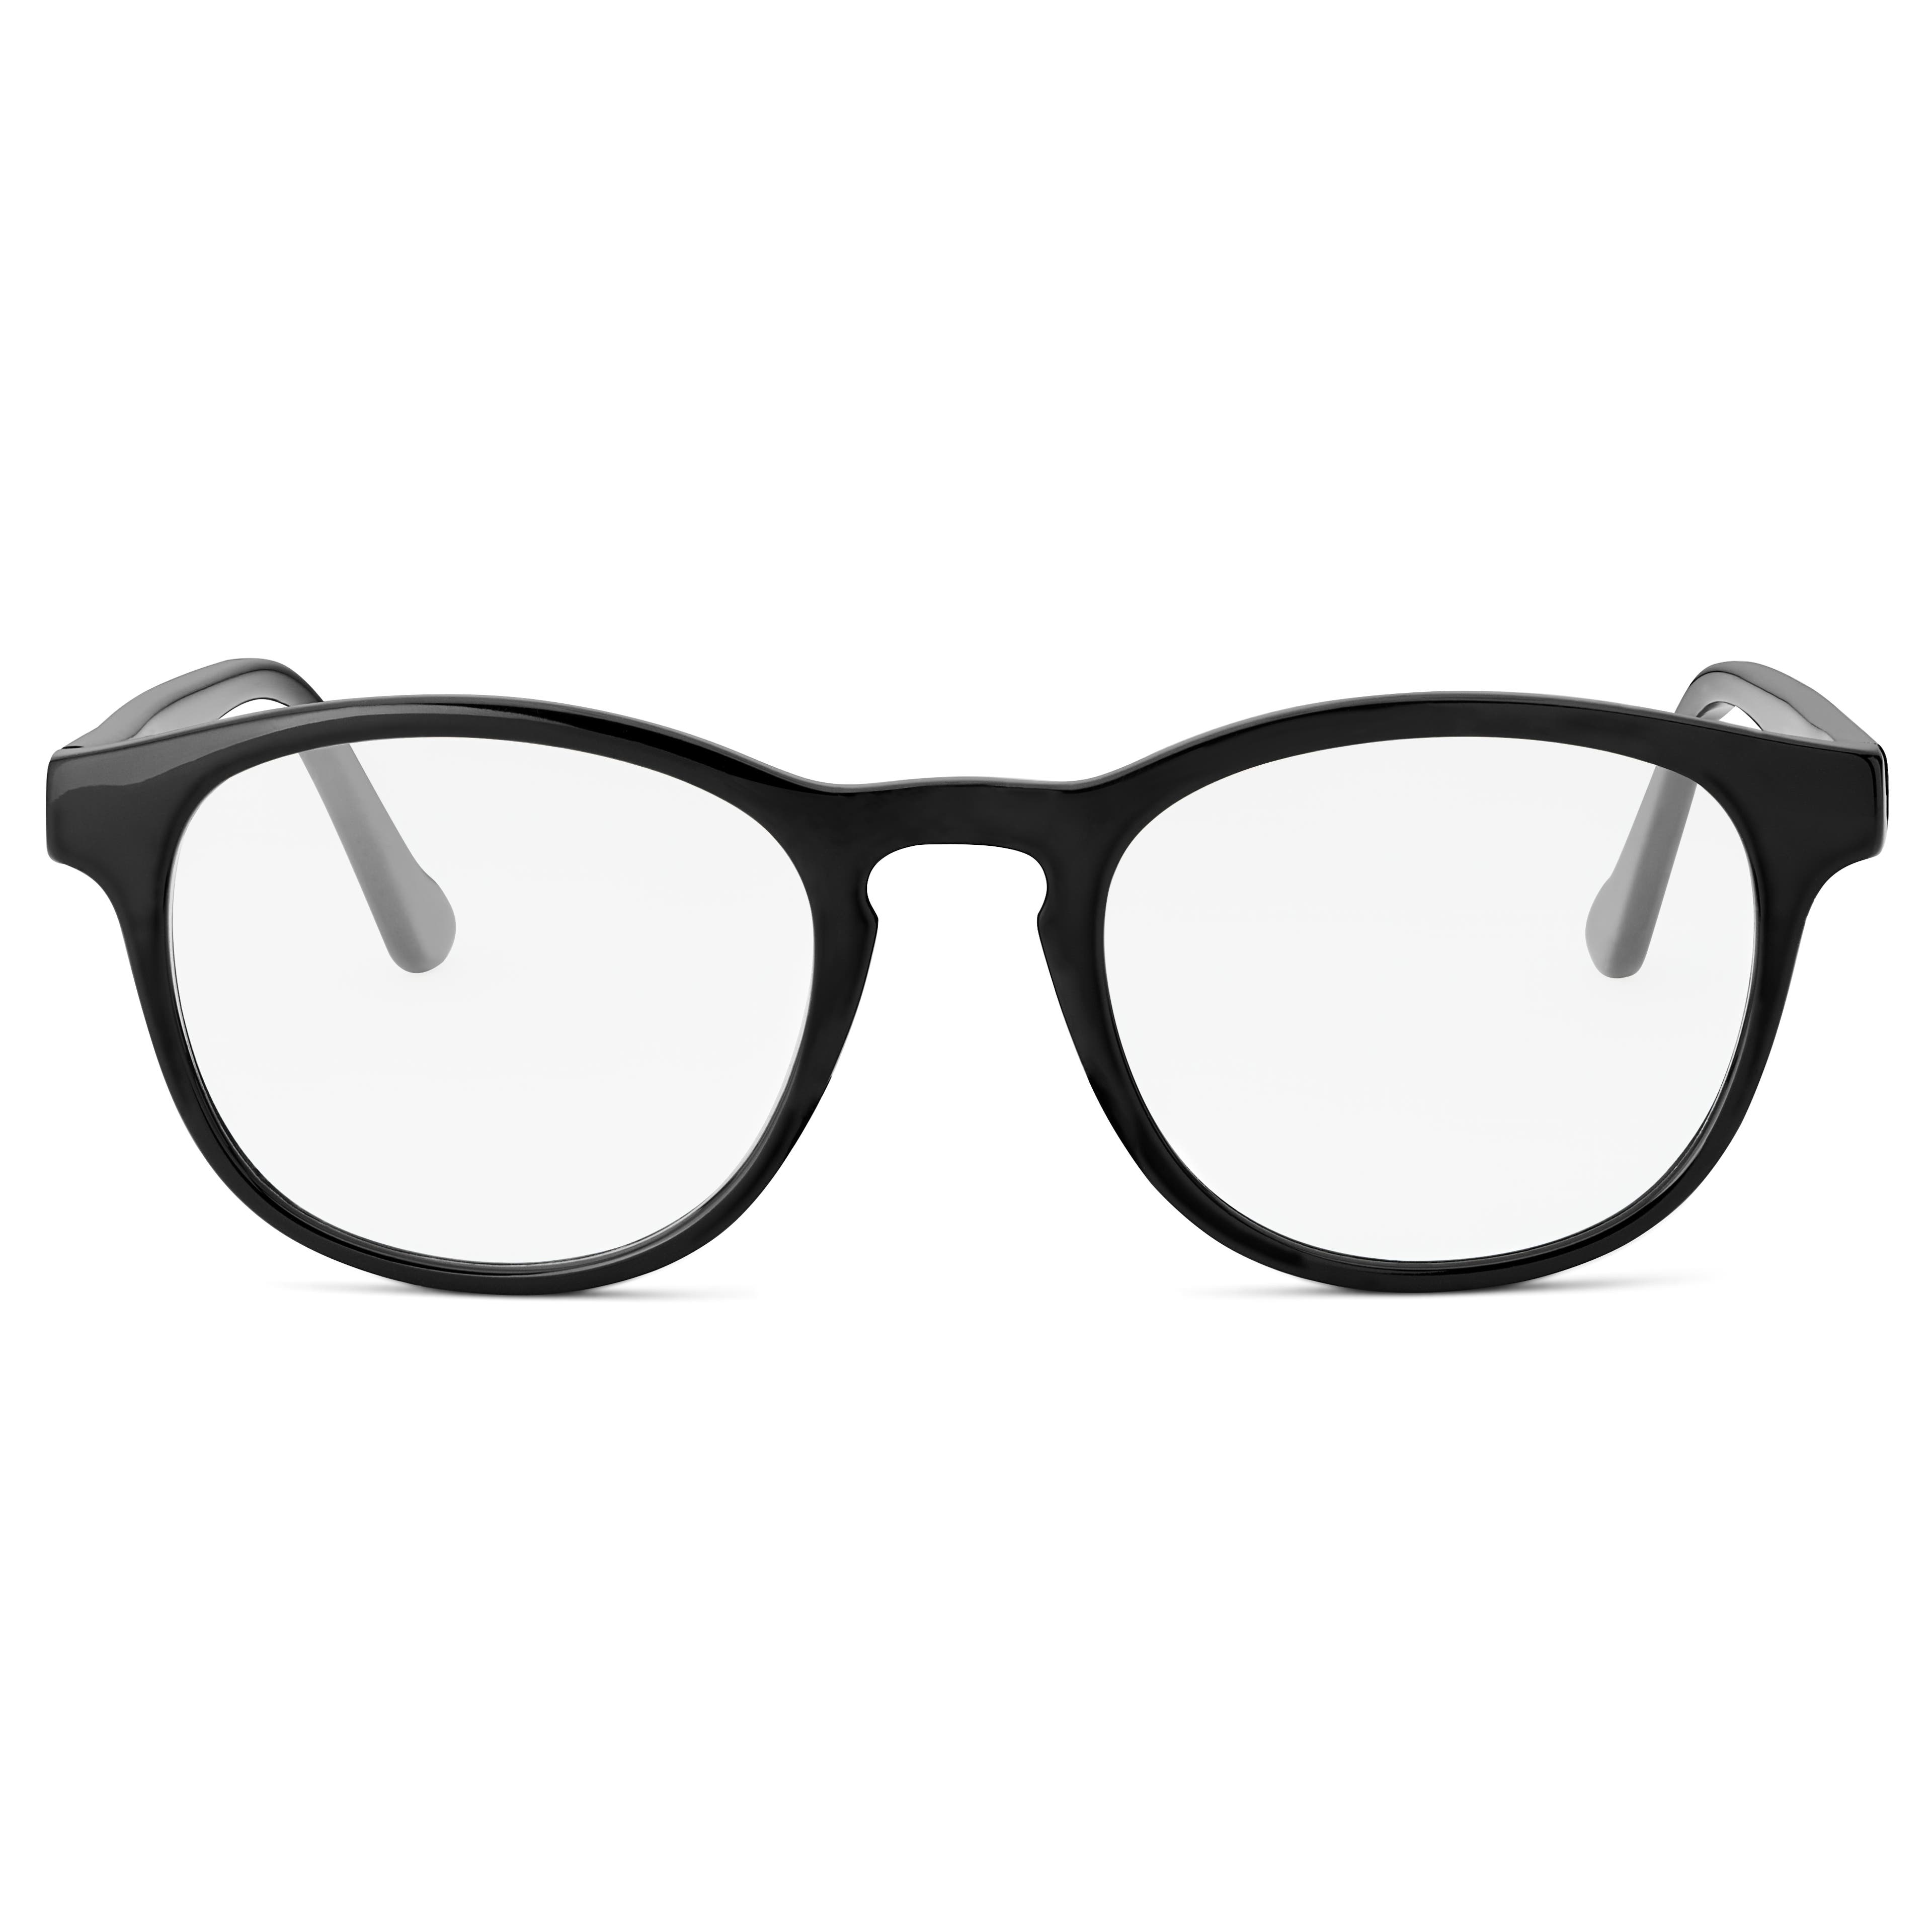 Klasszikus fekete áttetsző lencsés kékfény szűrős szemüveg